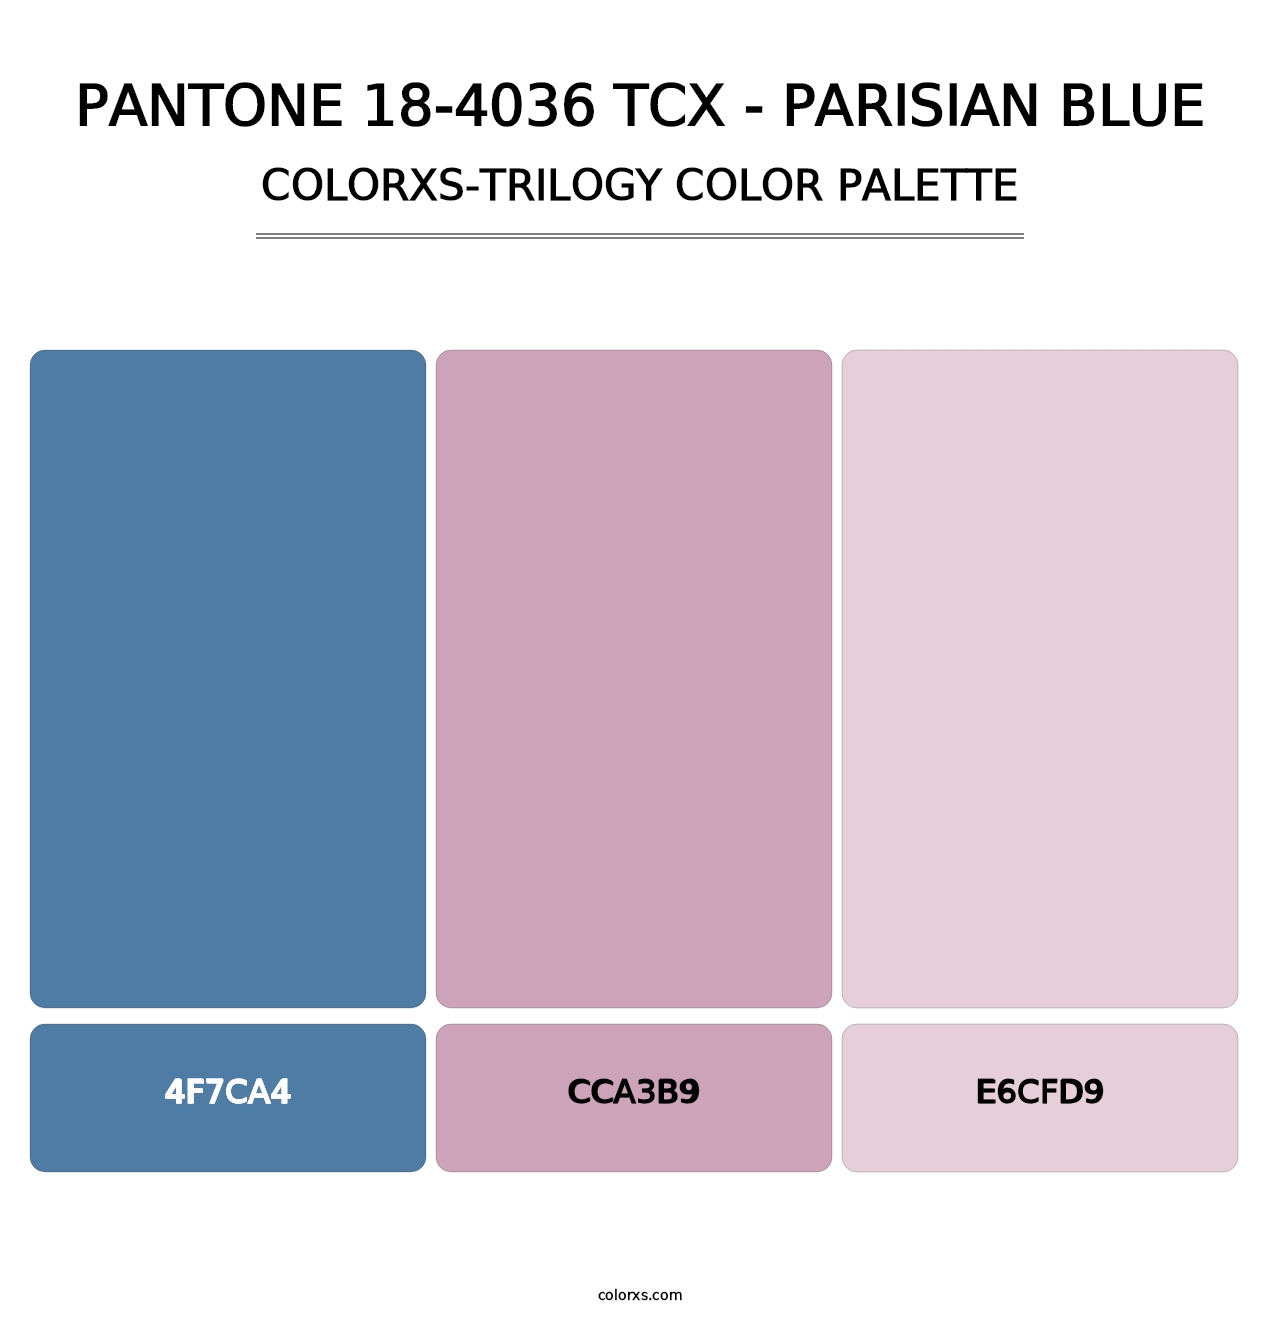 PANTONE 18-4036 TCX - Parisian Blue - Colorxs Trilogy Palette